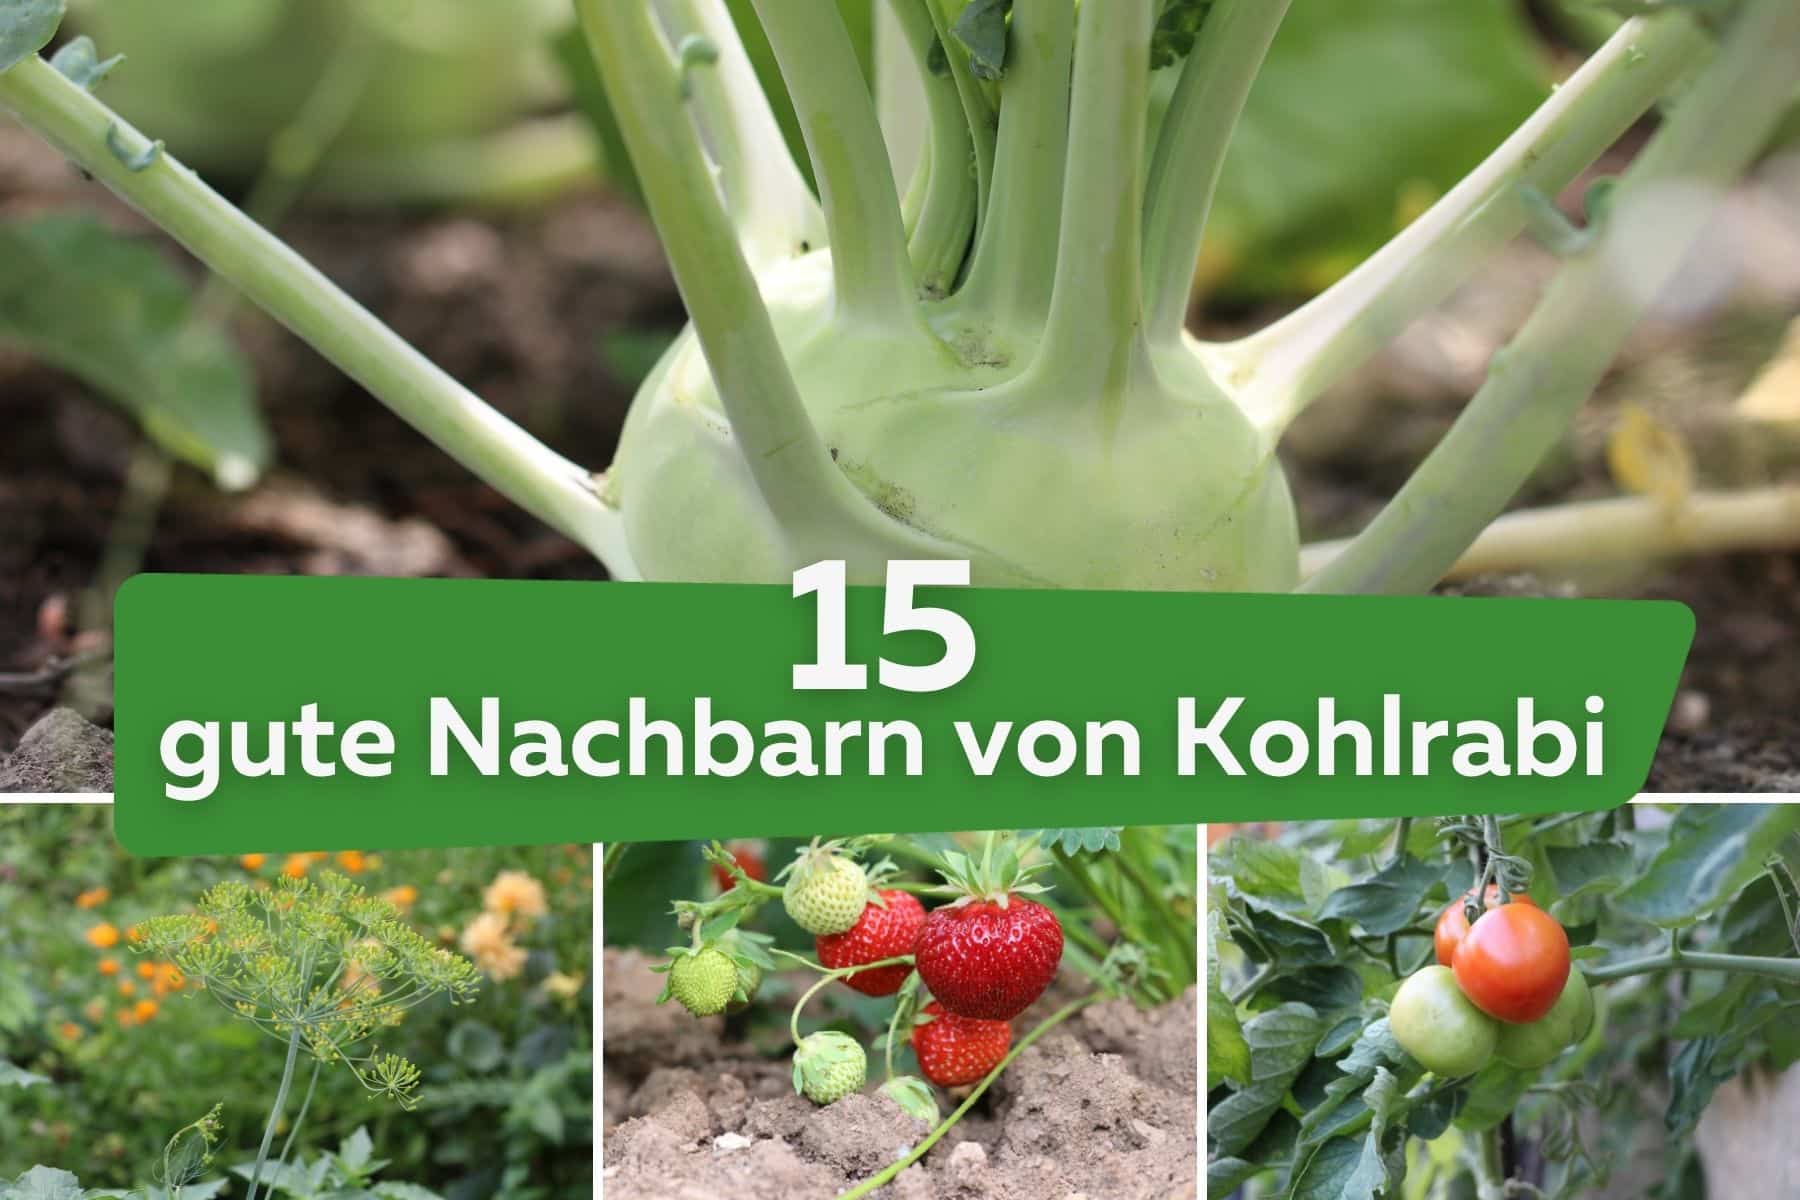 15 gute Nachbarn von Kohlrabi: was verträgt sich? Kohlrabi, Dill, Erdbeeren und Tomaten